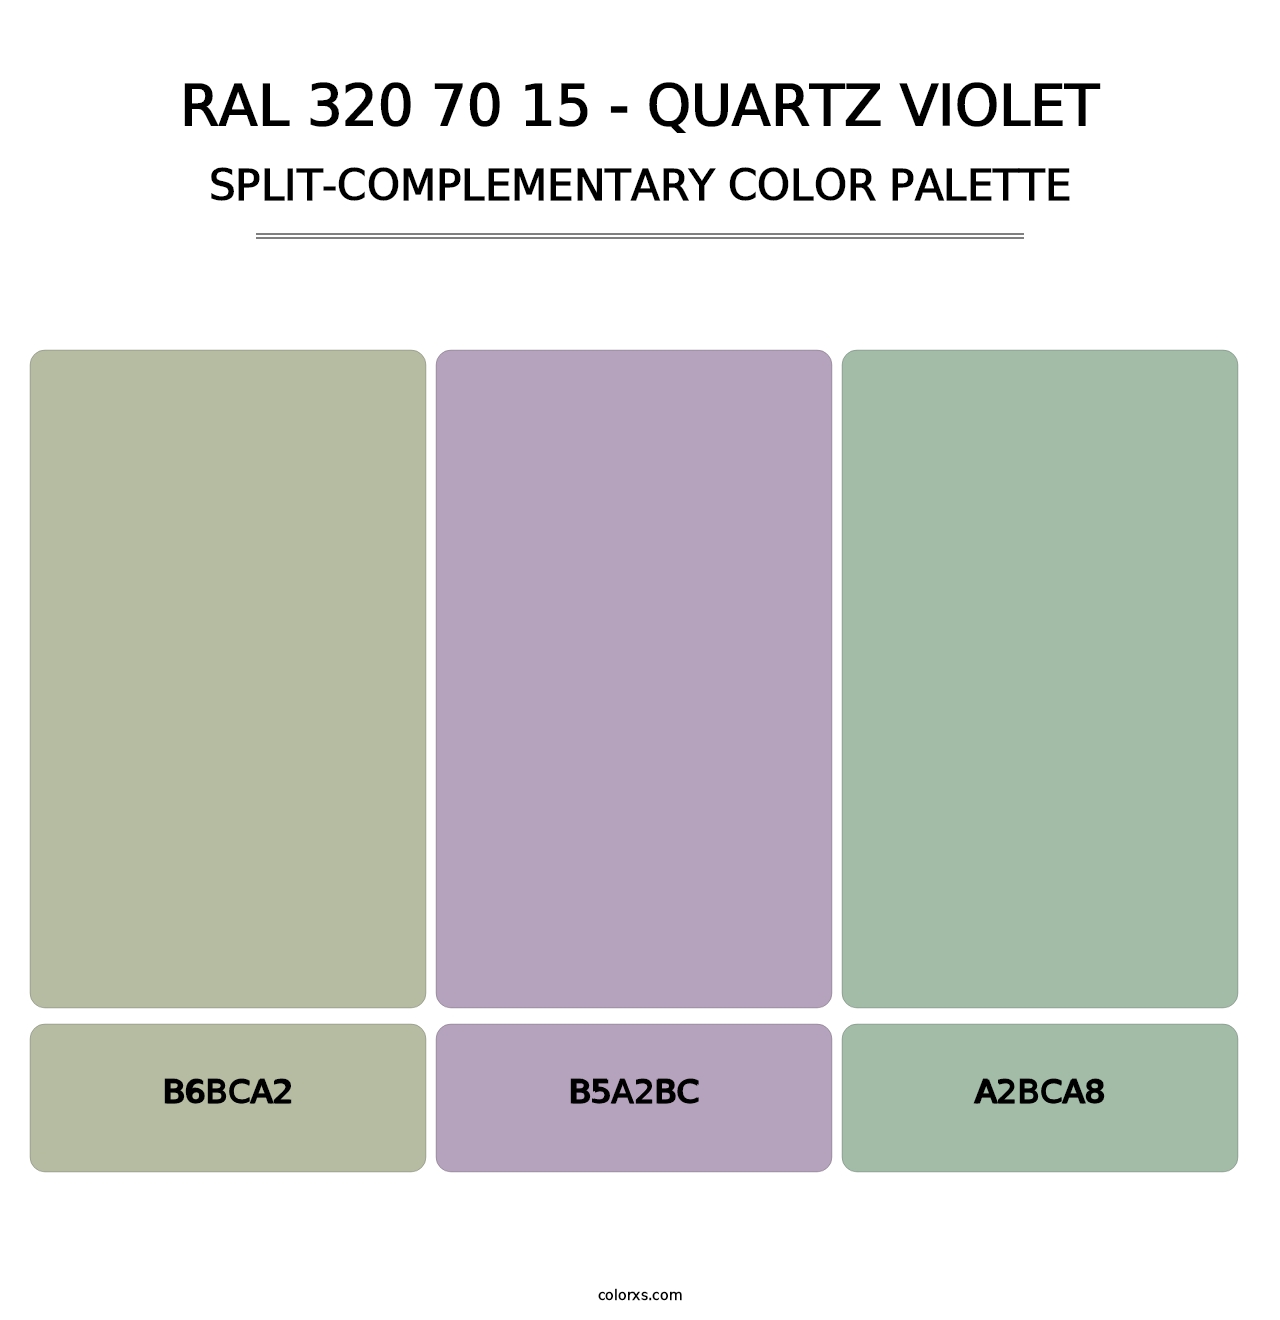 RAL 320 70 15 - Quartz Violet - Split-Complementary Color Palette